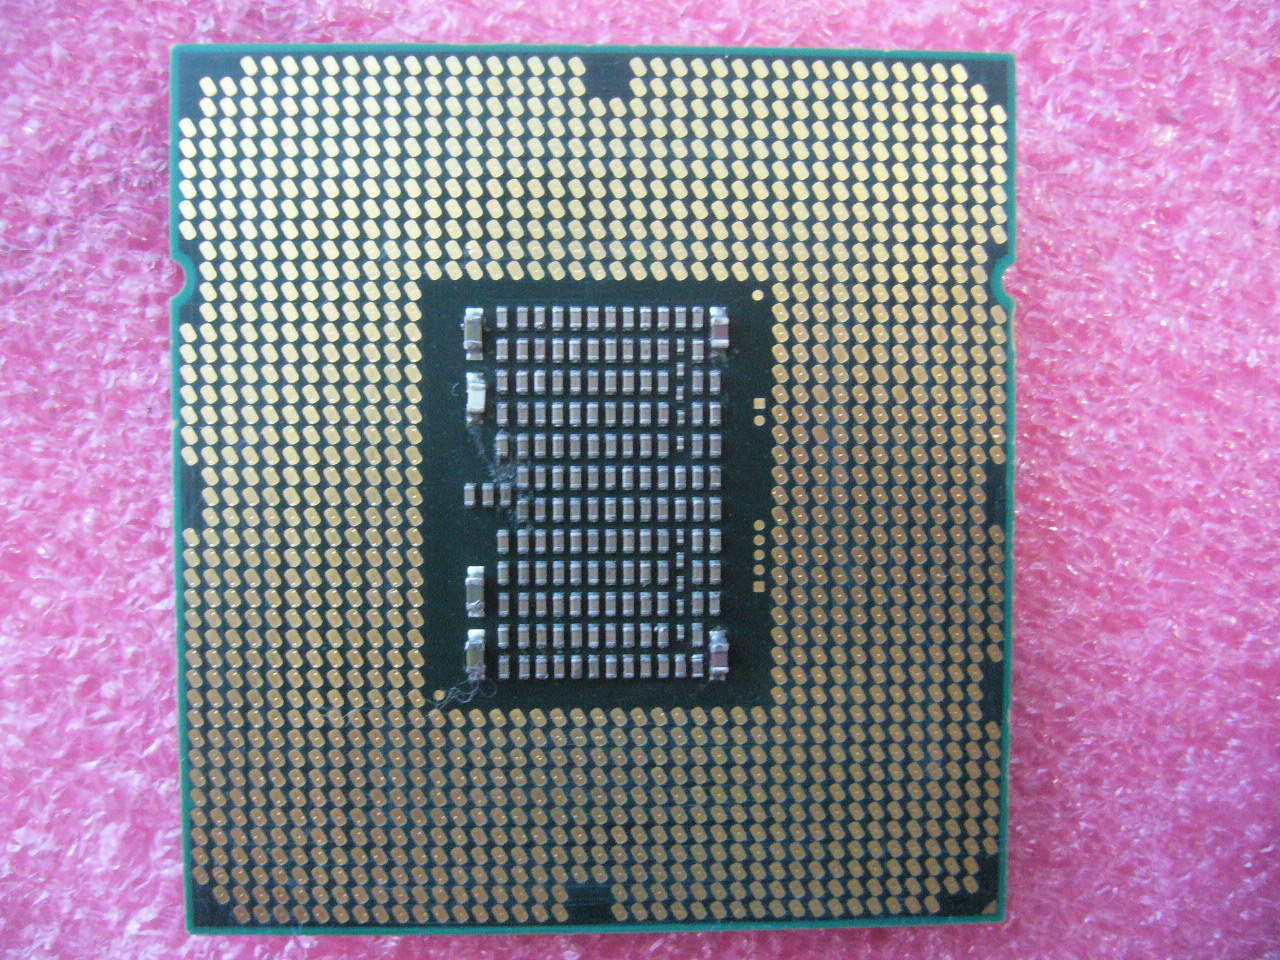 QTY 1x INTEL Six-Cores CPU X5650 2.66GHZ/12MB 6.4GT/s QPI LGA1366 SLBV3 - zum Schließen ins Bild klicken